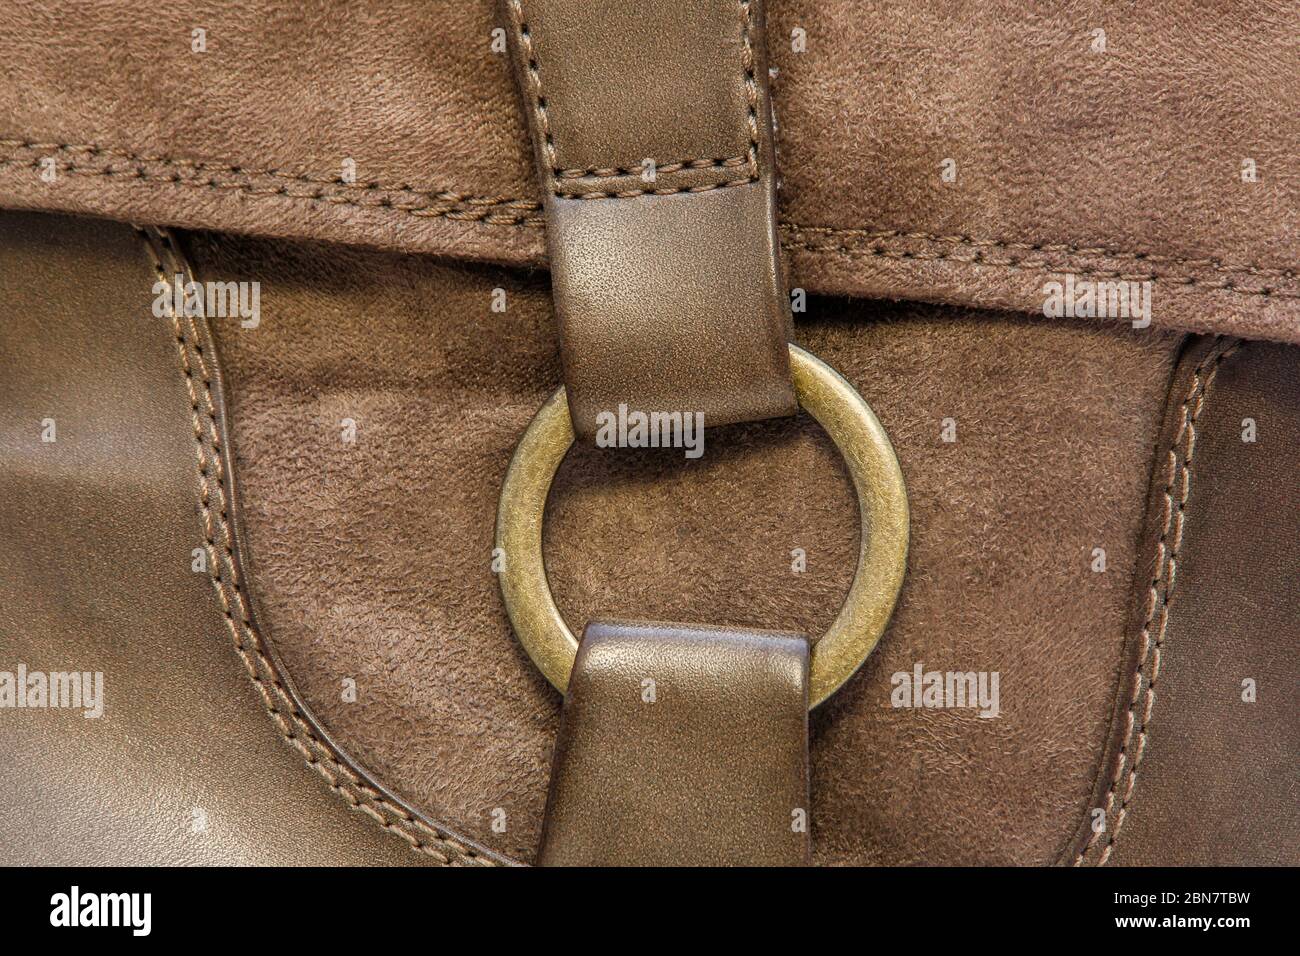 imagen de un anillo de cobre en una bota de cuero Foto de stock